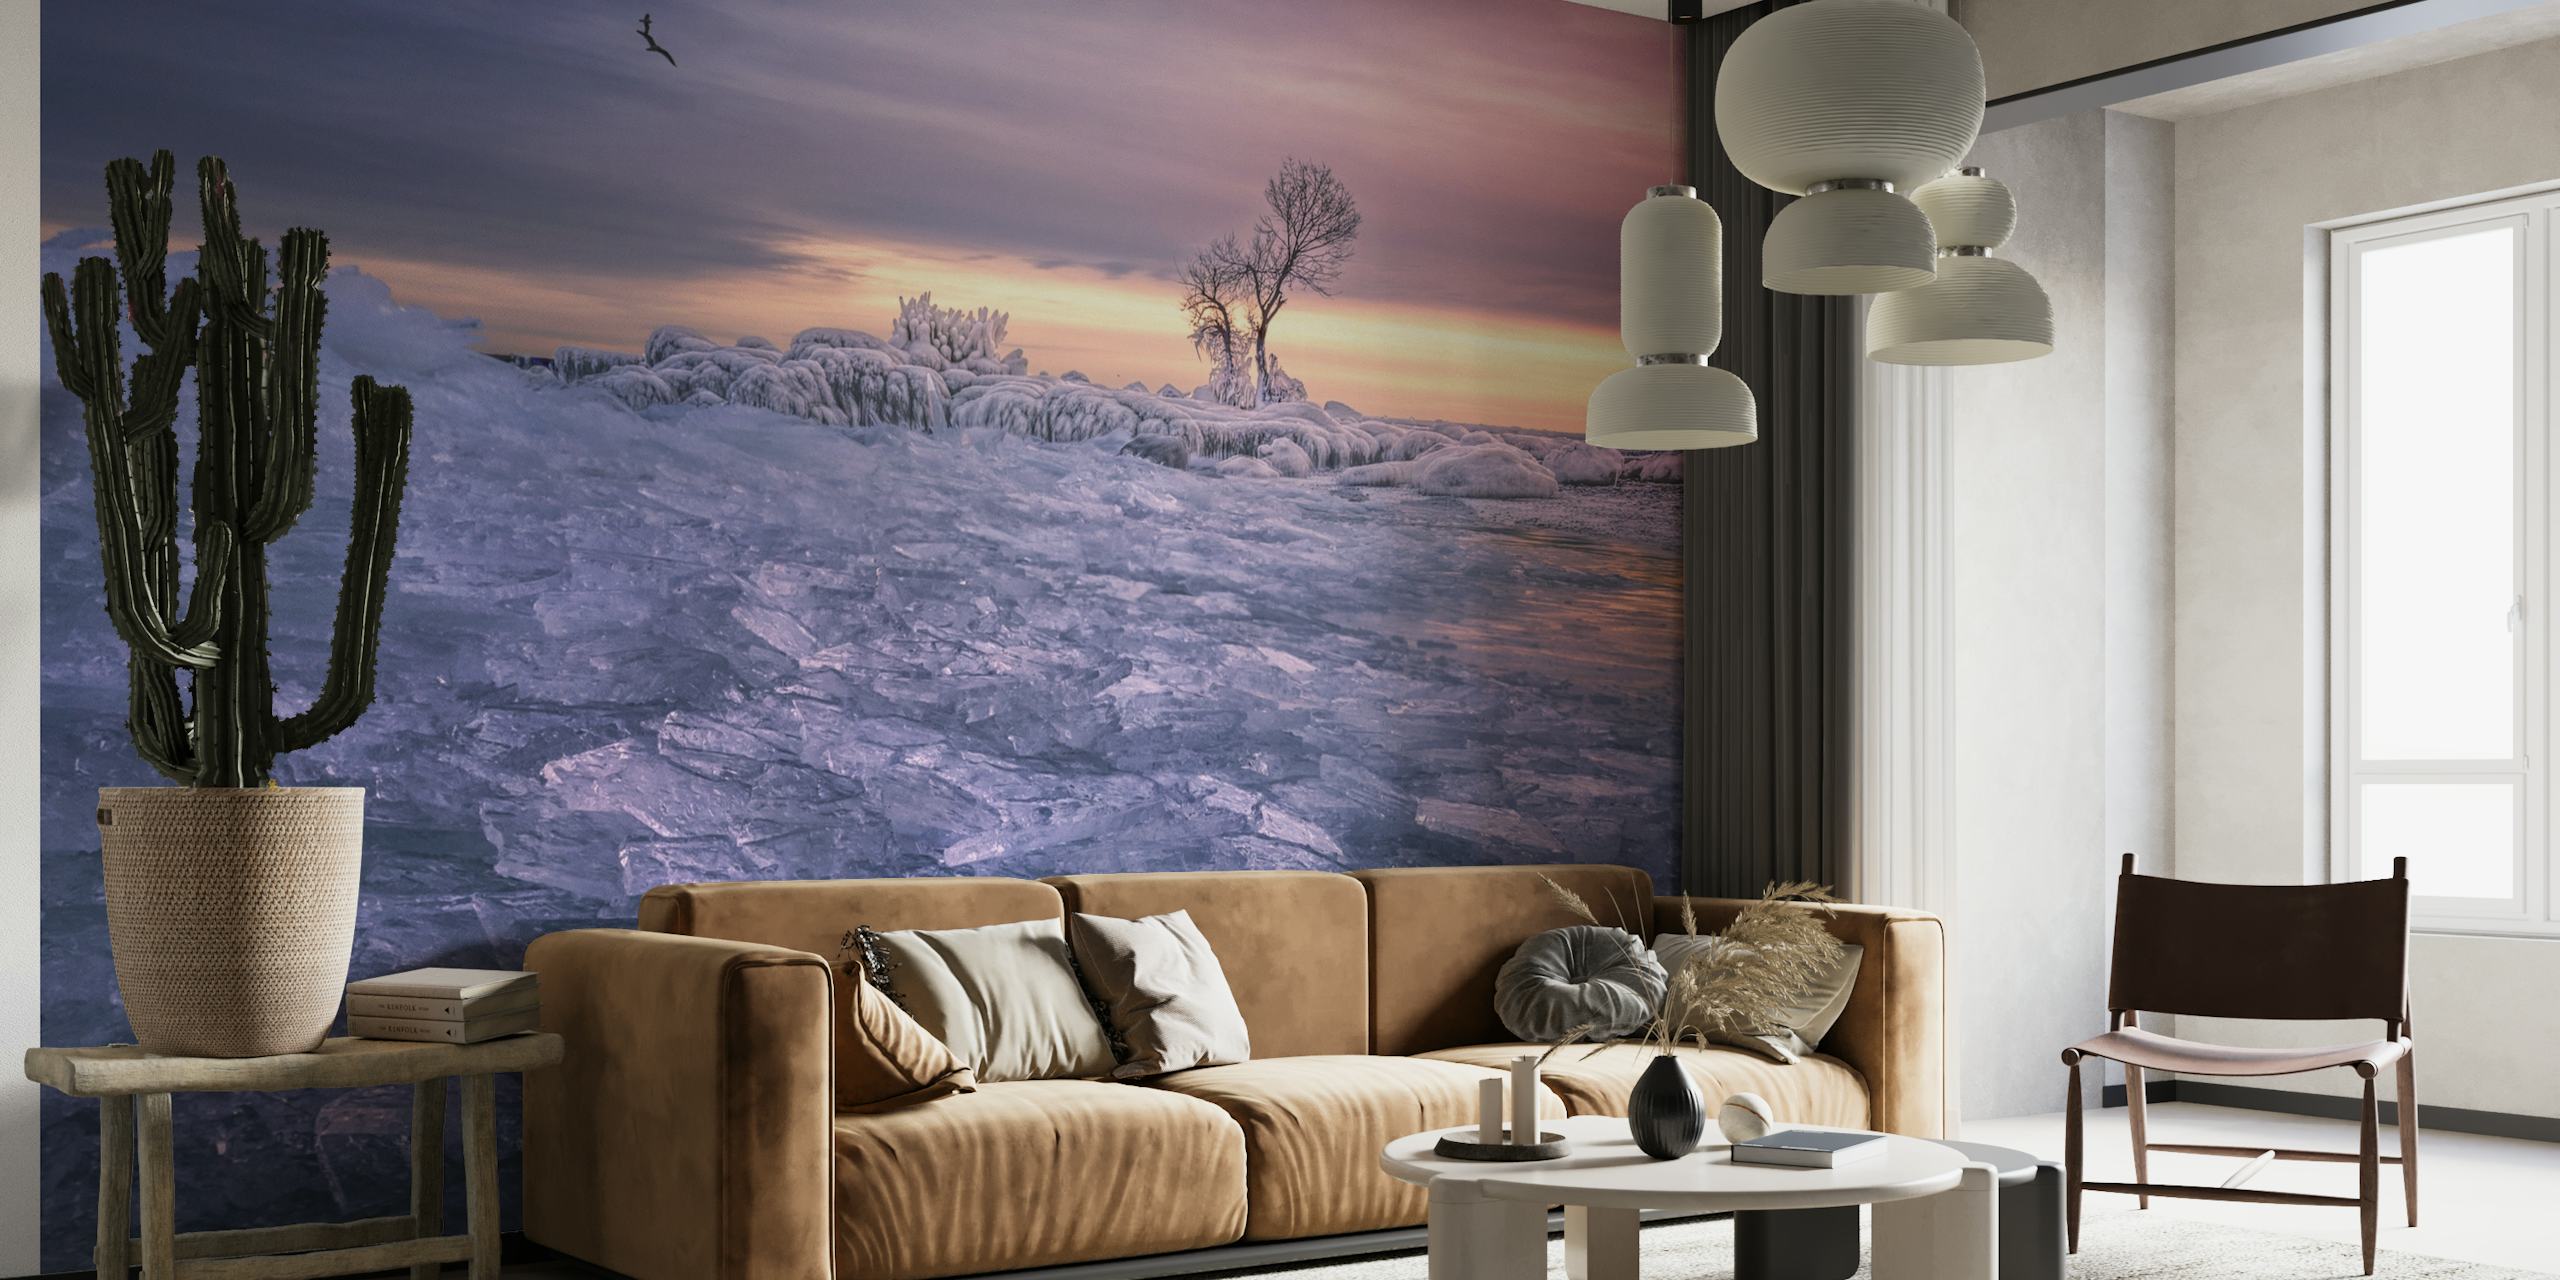 Zidna slika s mirnim zimskim prizorom s osamljenim stablom i nijansama sumraka iznad zaleđenog krajolika.